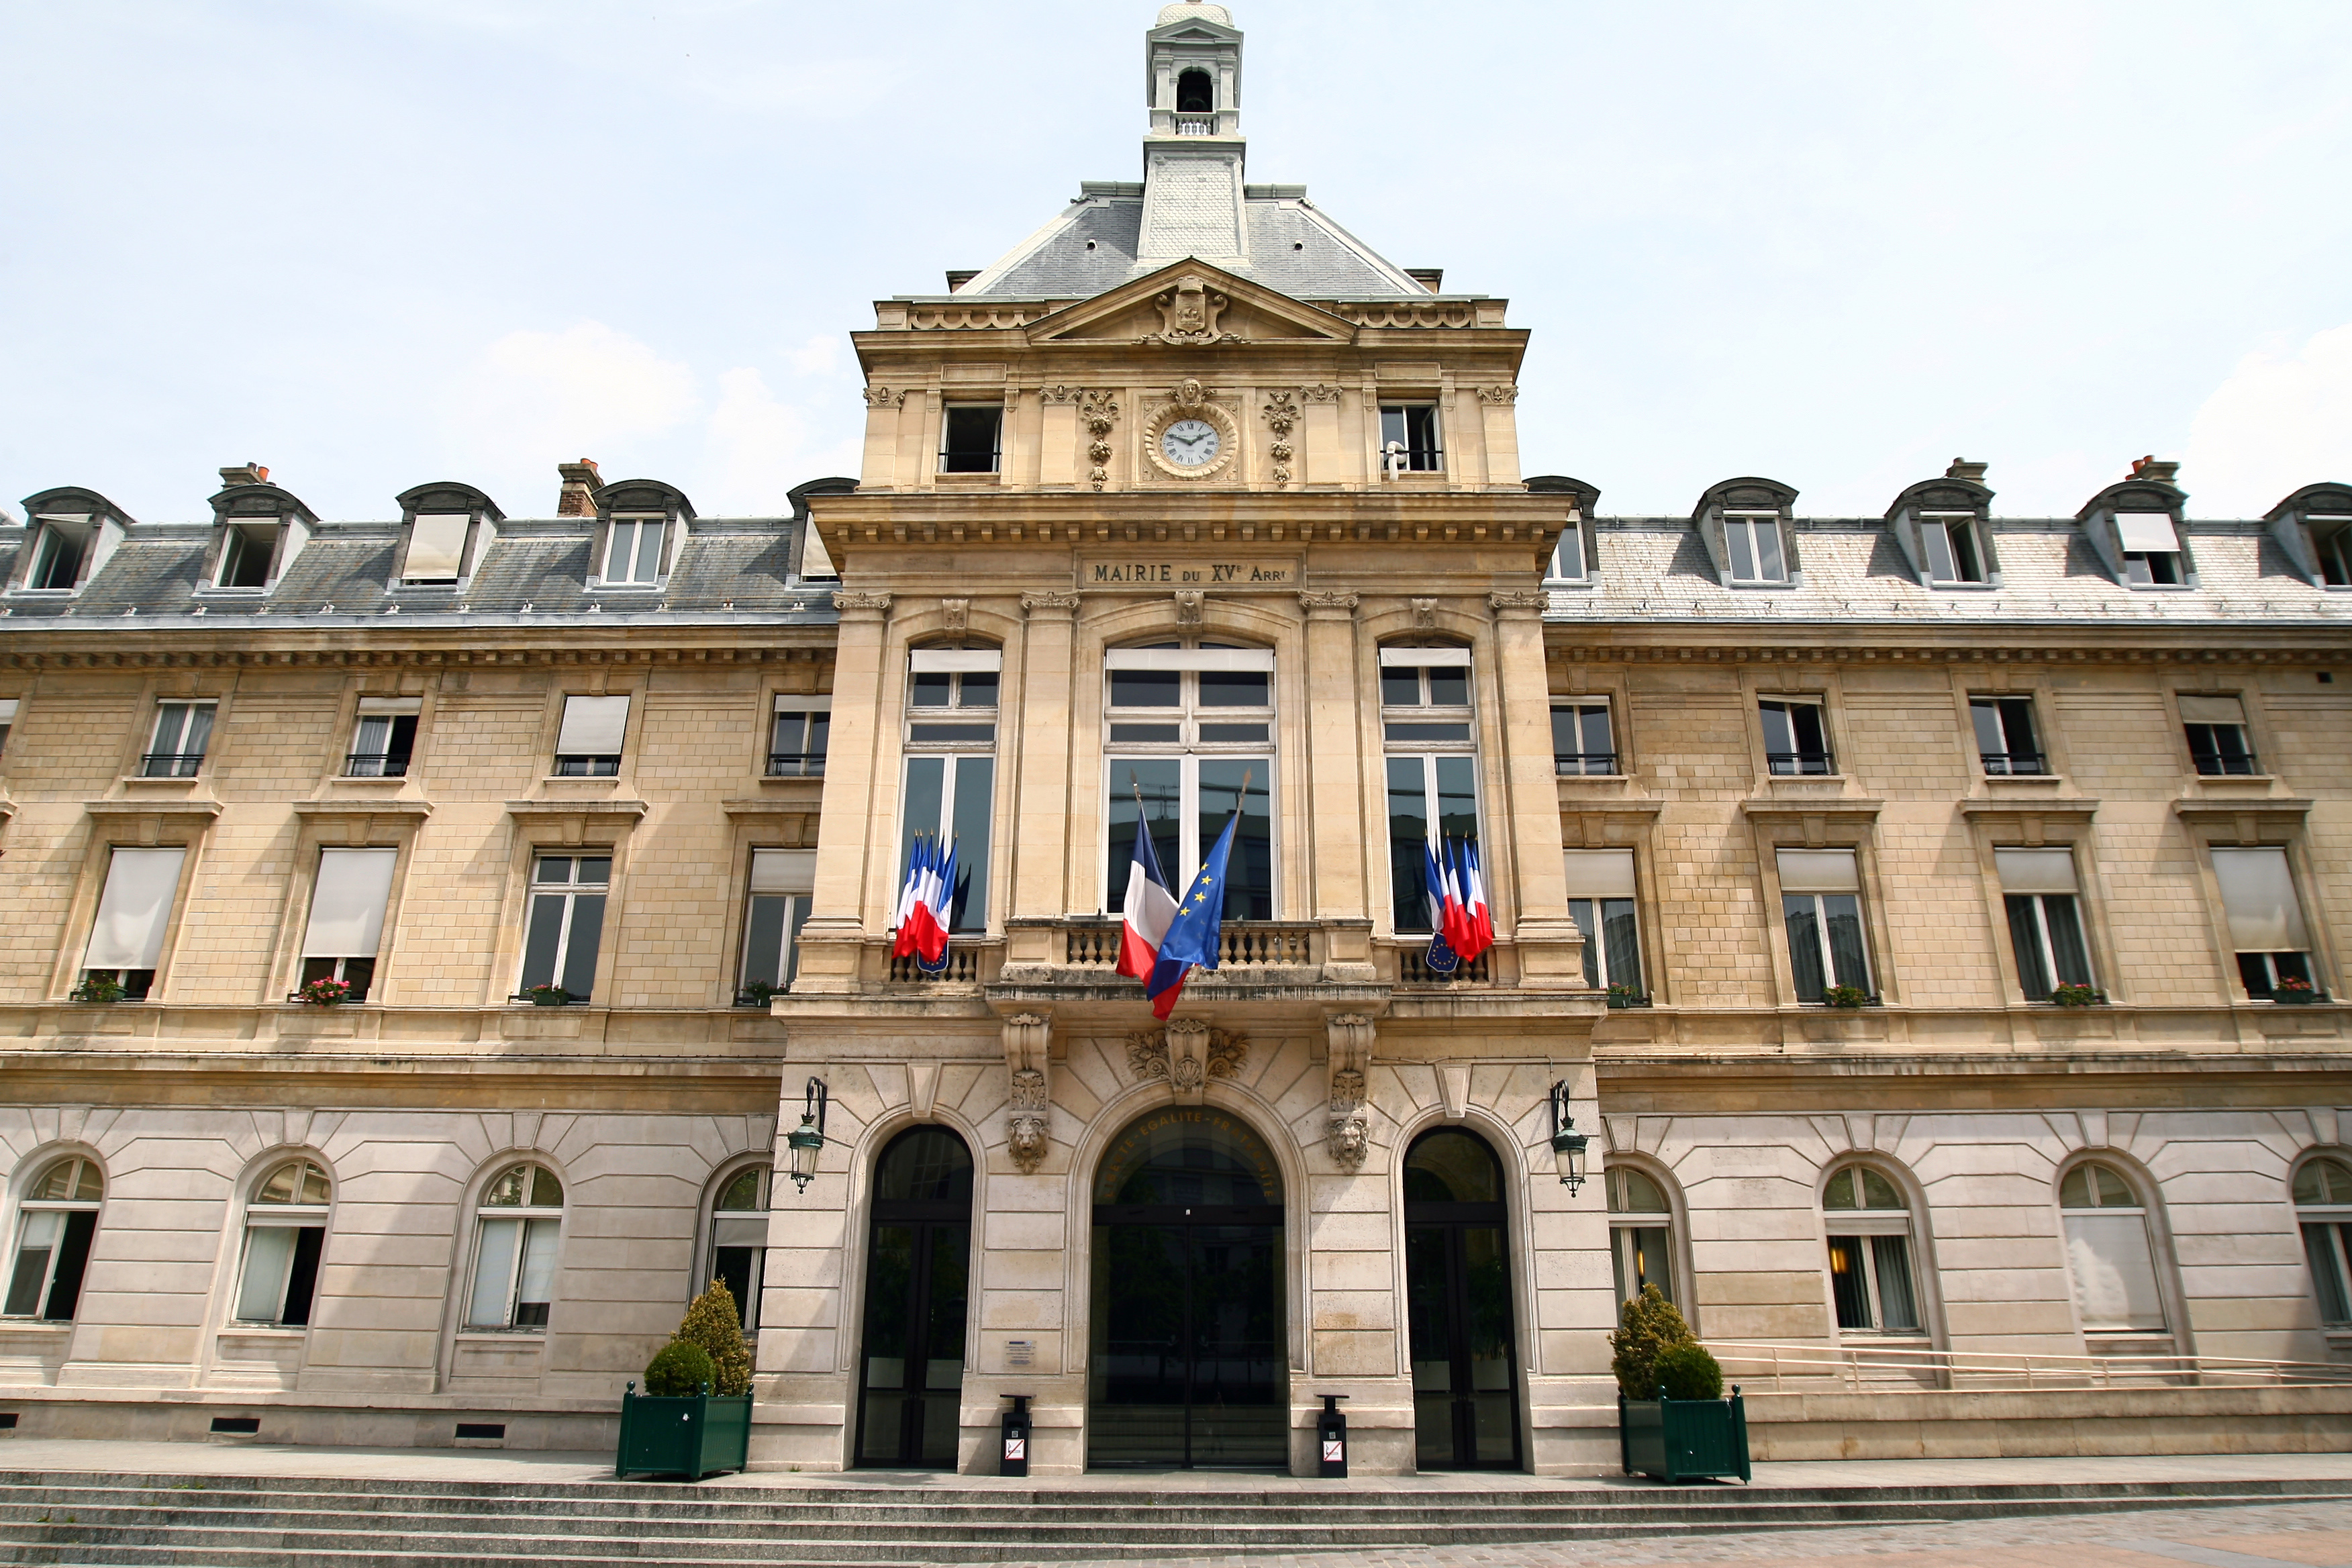 PDF adresse mairie 20 arrondissement paris PDF Télécharger Download